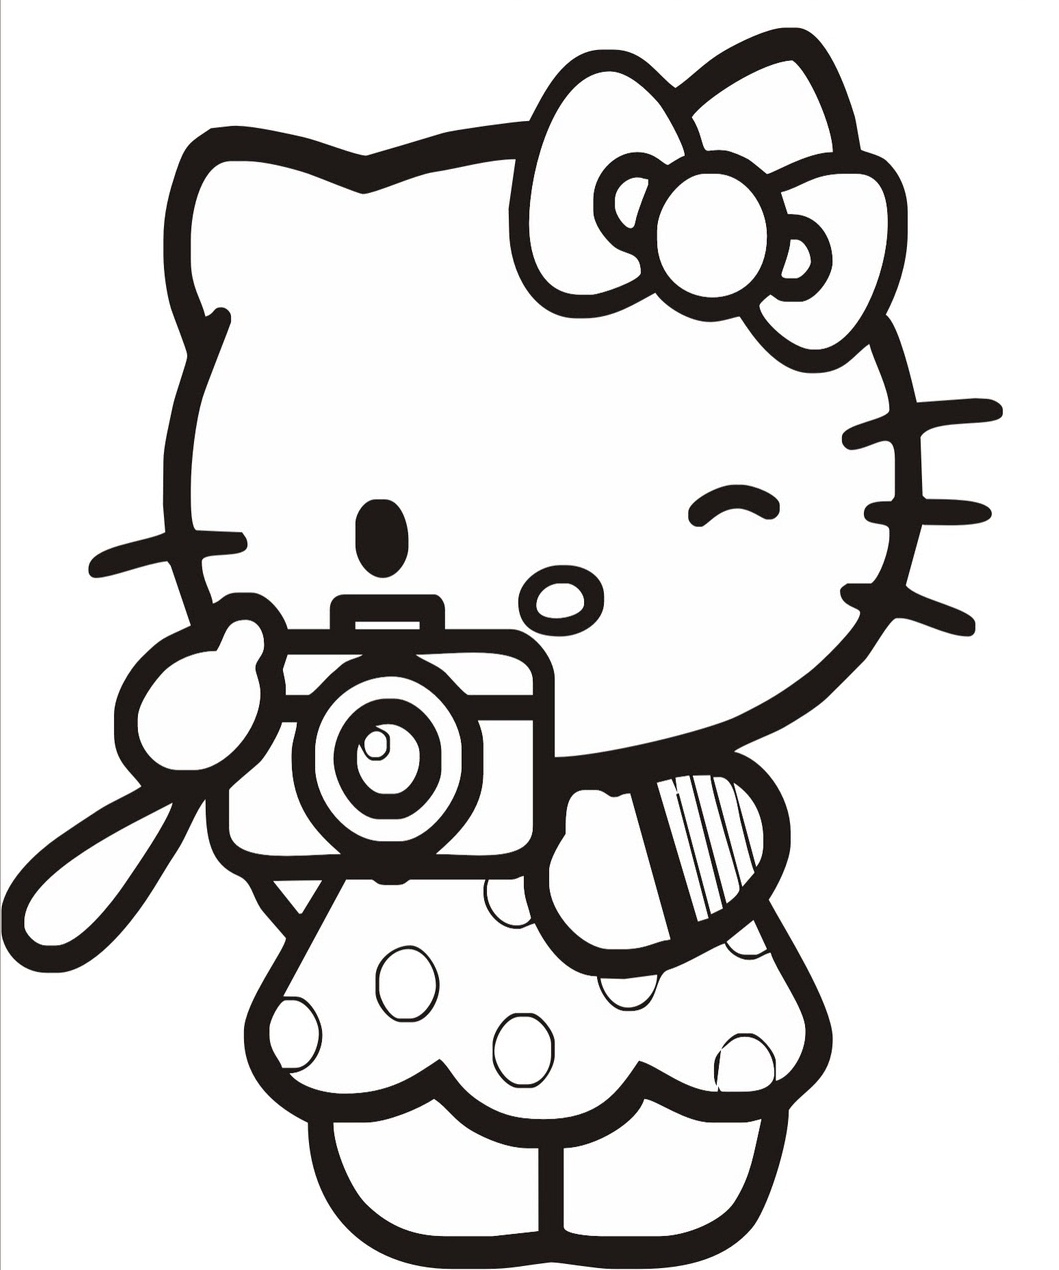 Explorando a Criatividade com Desenhos para Colorir: Hello Kitty